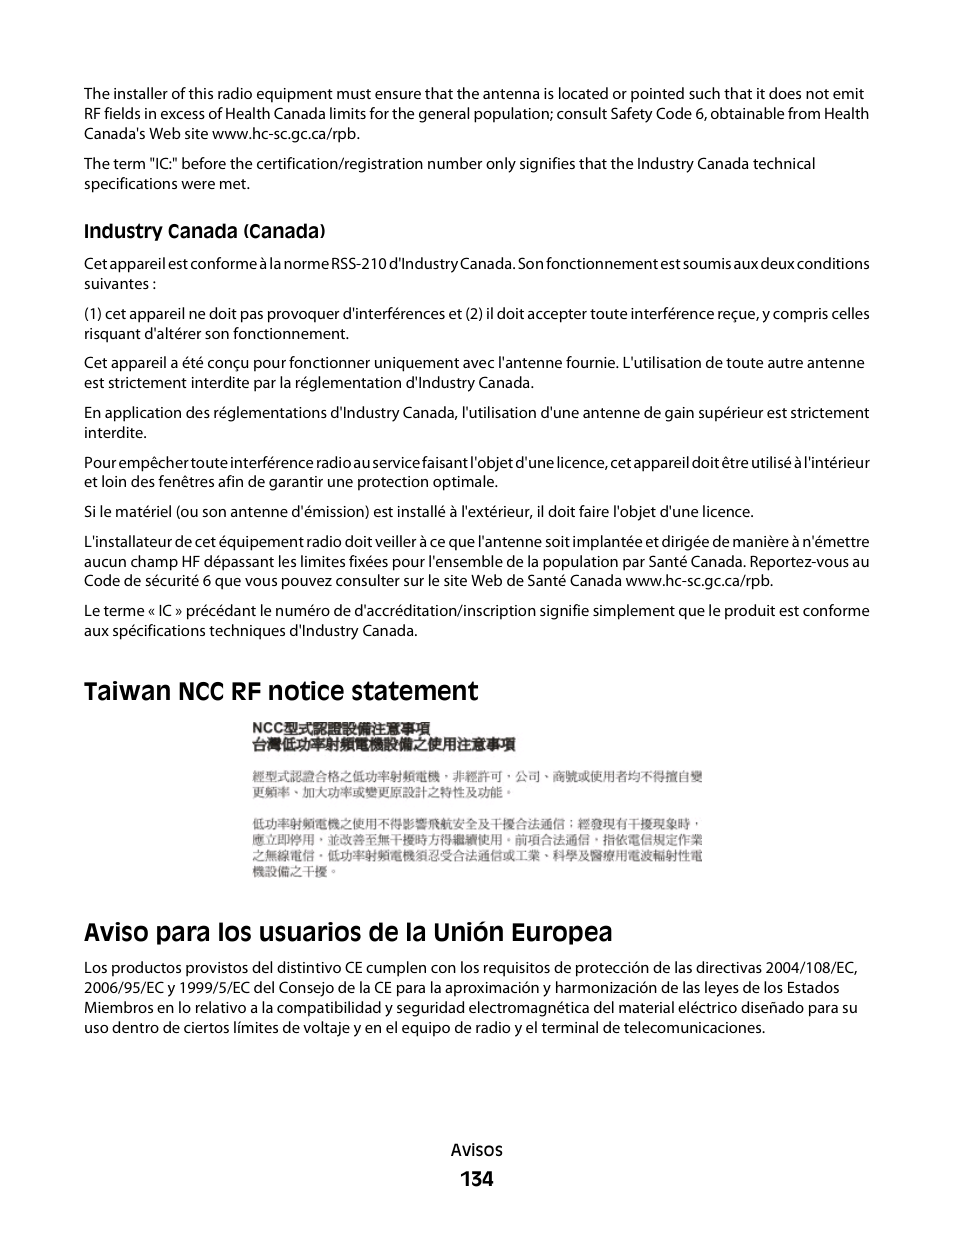 Taiwan ncc rf notice statement, Aviso para los usuarios de la unión europea | Dell V313w All In One Wireless Inkjet Printer Manual del usuario | Página 134 / 142